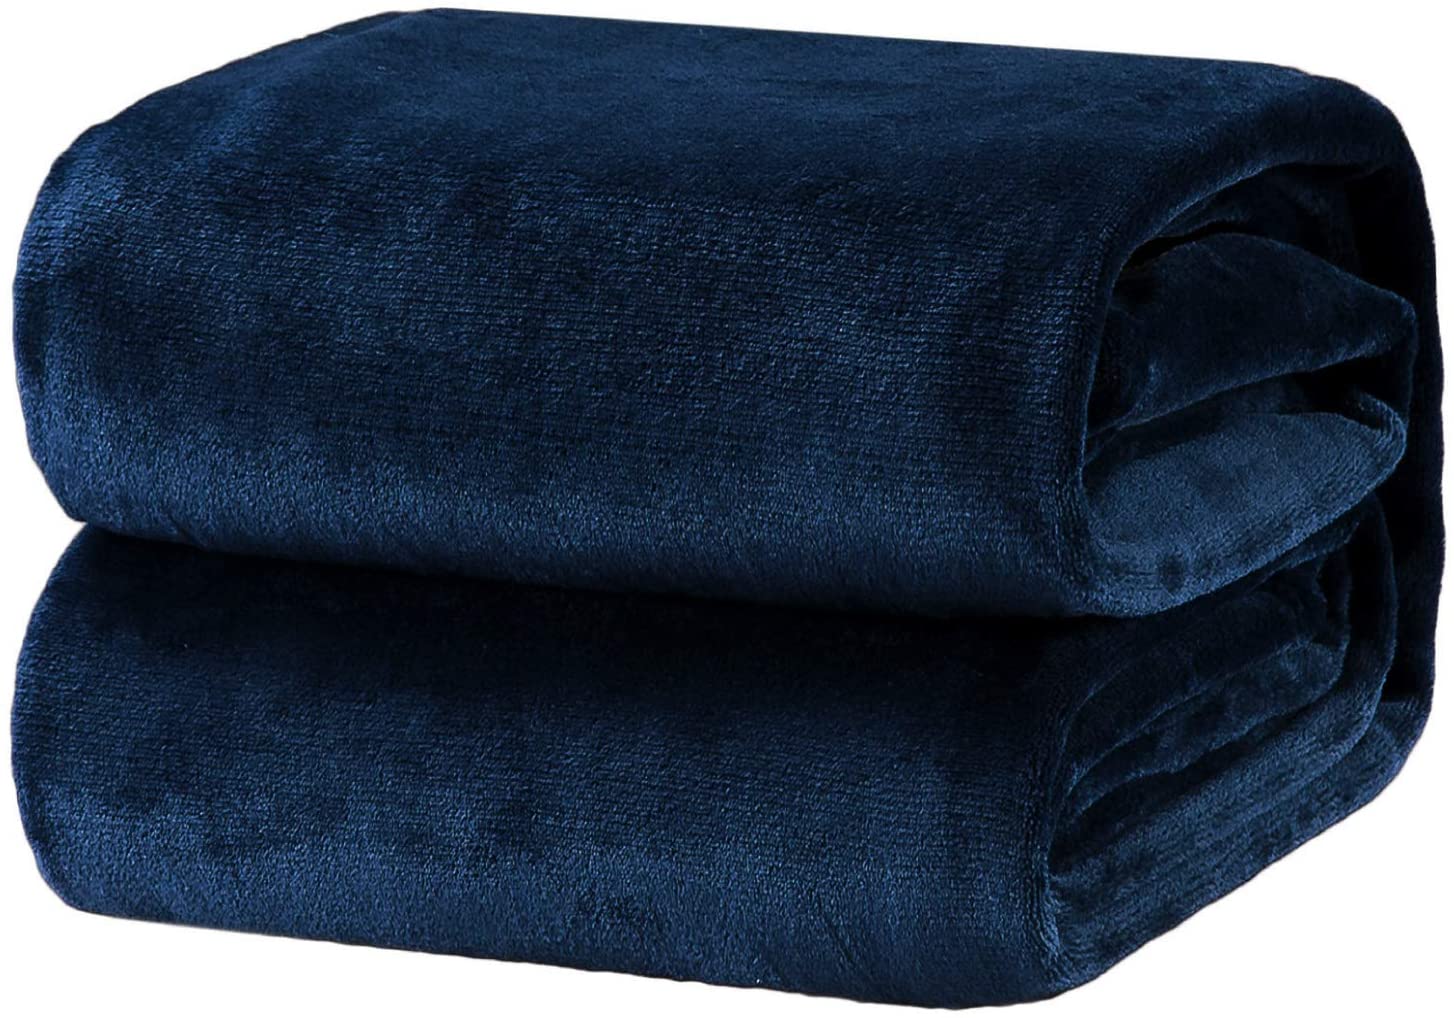 Large Fleece Blanket Cool Vet Fleece Luxury Blanket - Black 80x60 OAKSTORE Being A Veterinarian Soft Fleece Throw Blanket 